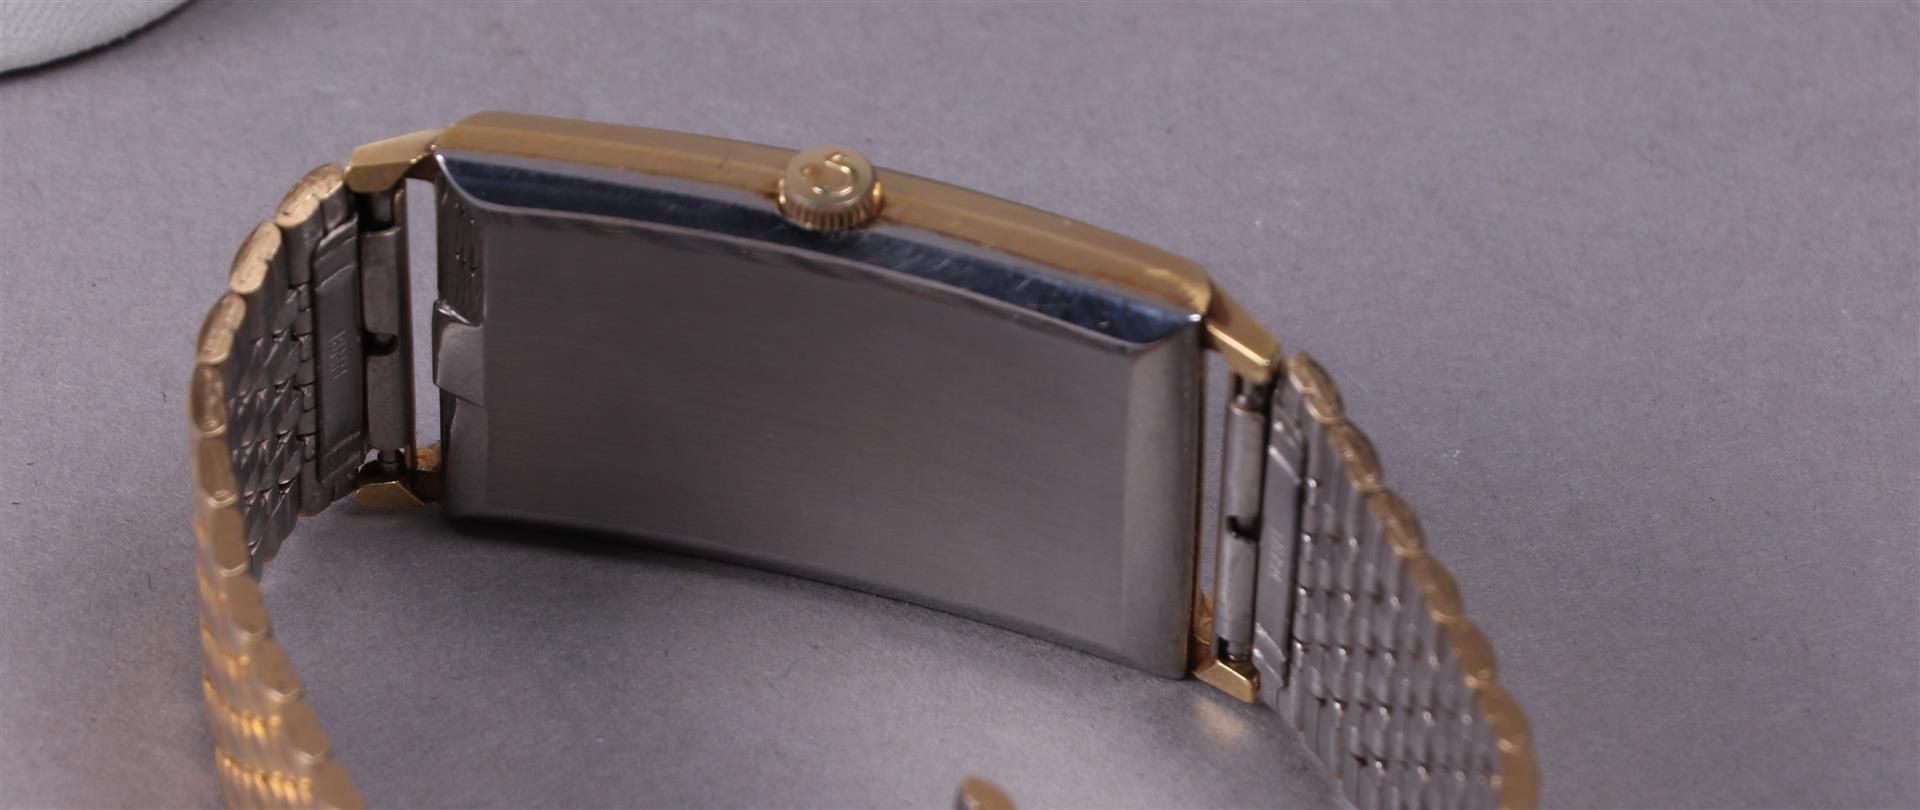 An Omega De Ville gold-plated men's wristwatch, hand-wound. Including original box - Bild 6 aus 13